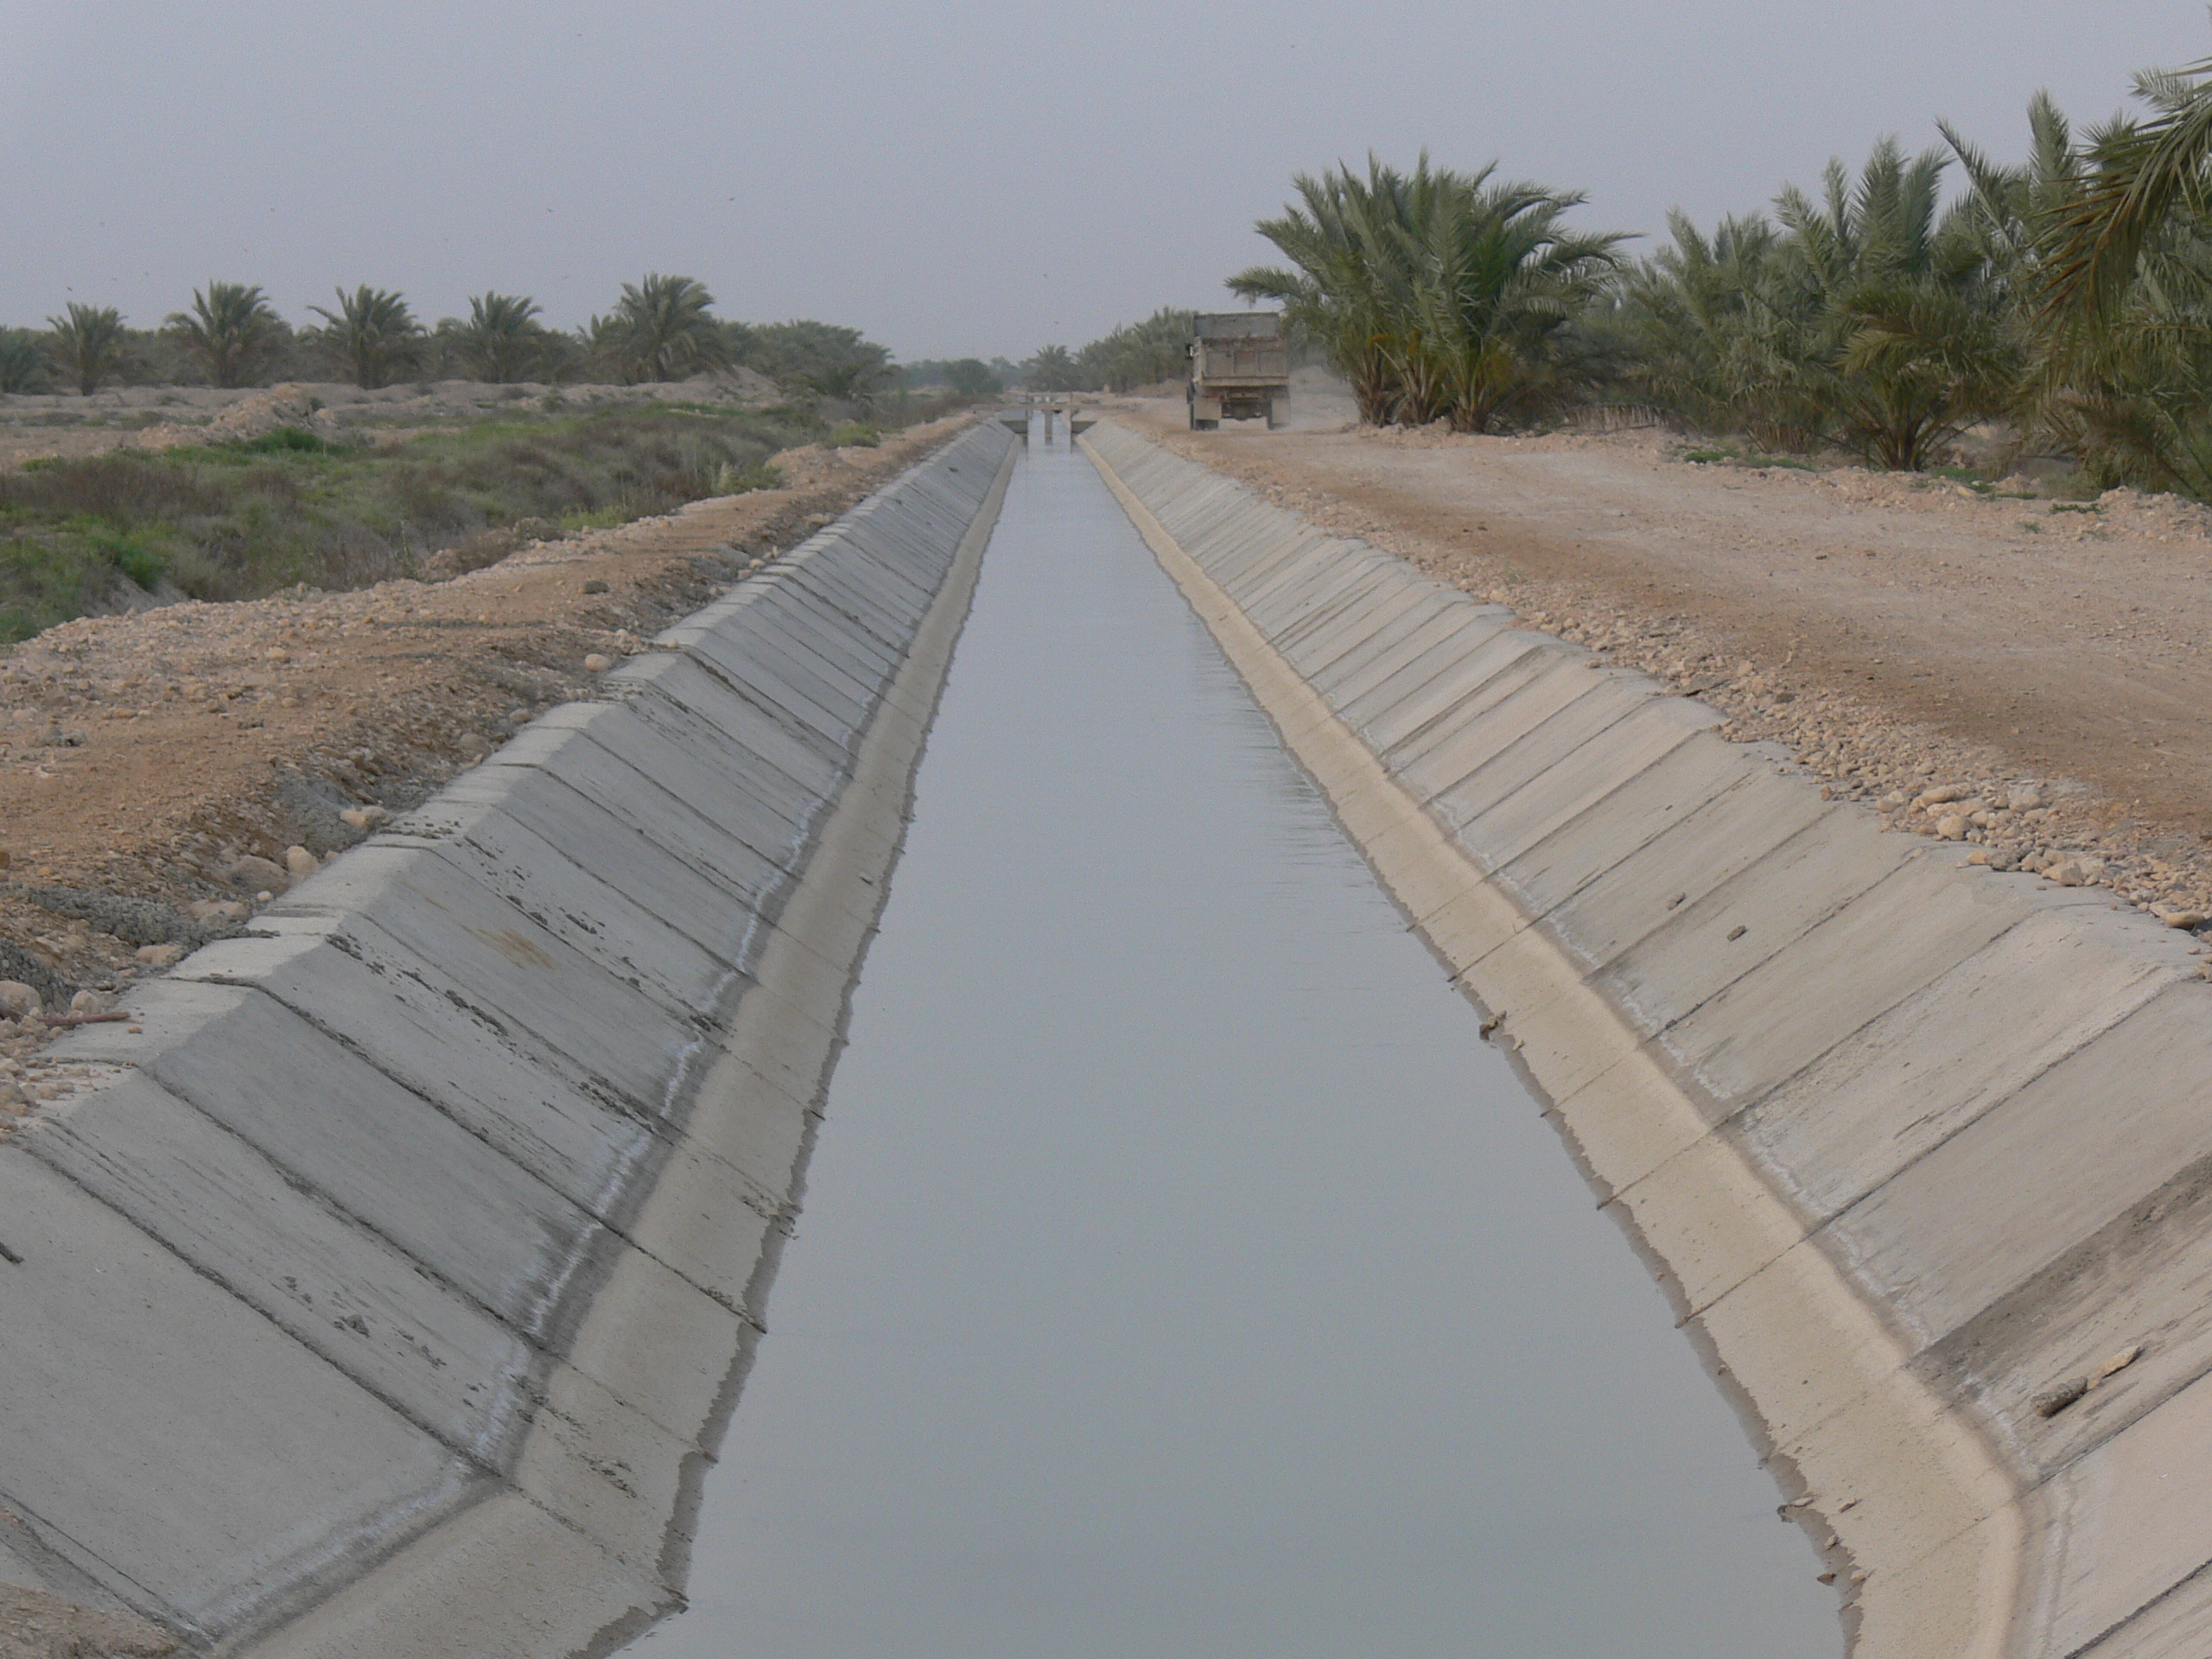     احداث کانالهای شبکه آبیاری ایستگاه پمپاژ  روستاههای کلل ِزیارت وبنار آب شیرین استان بوشهر